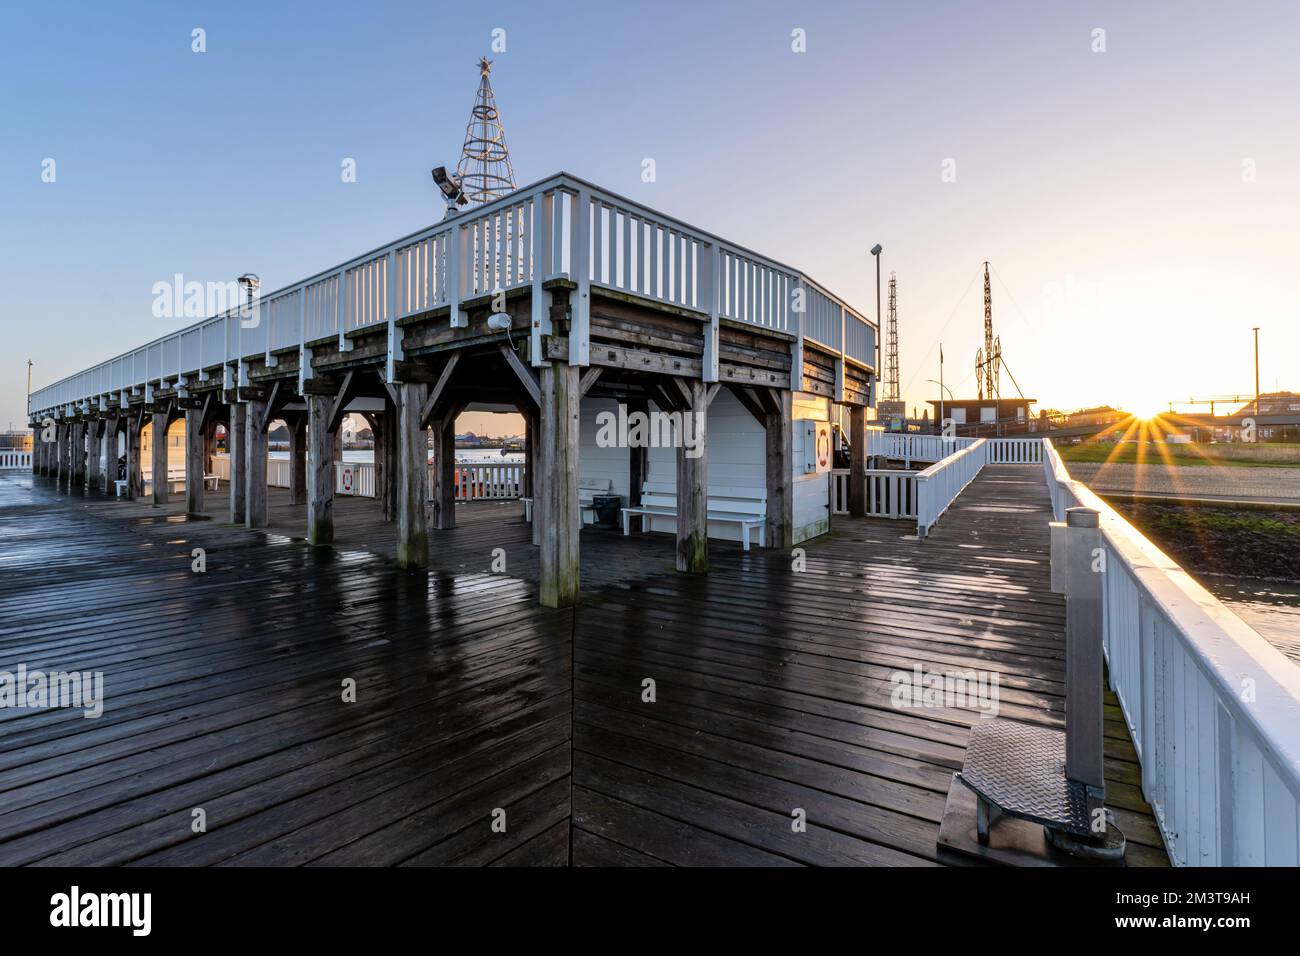 Alte Liebe, célèbre pont d'observation à Cuxhaven, en Allemagne, au bord de l'Elbe au coucher du soleil Banque D'Images